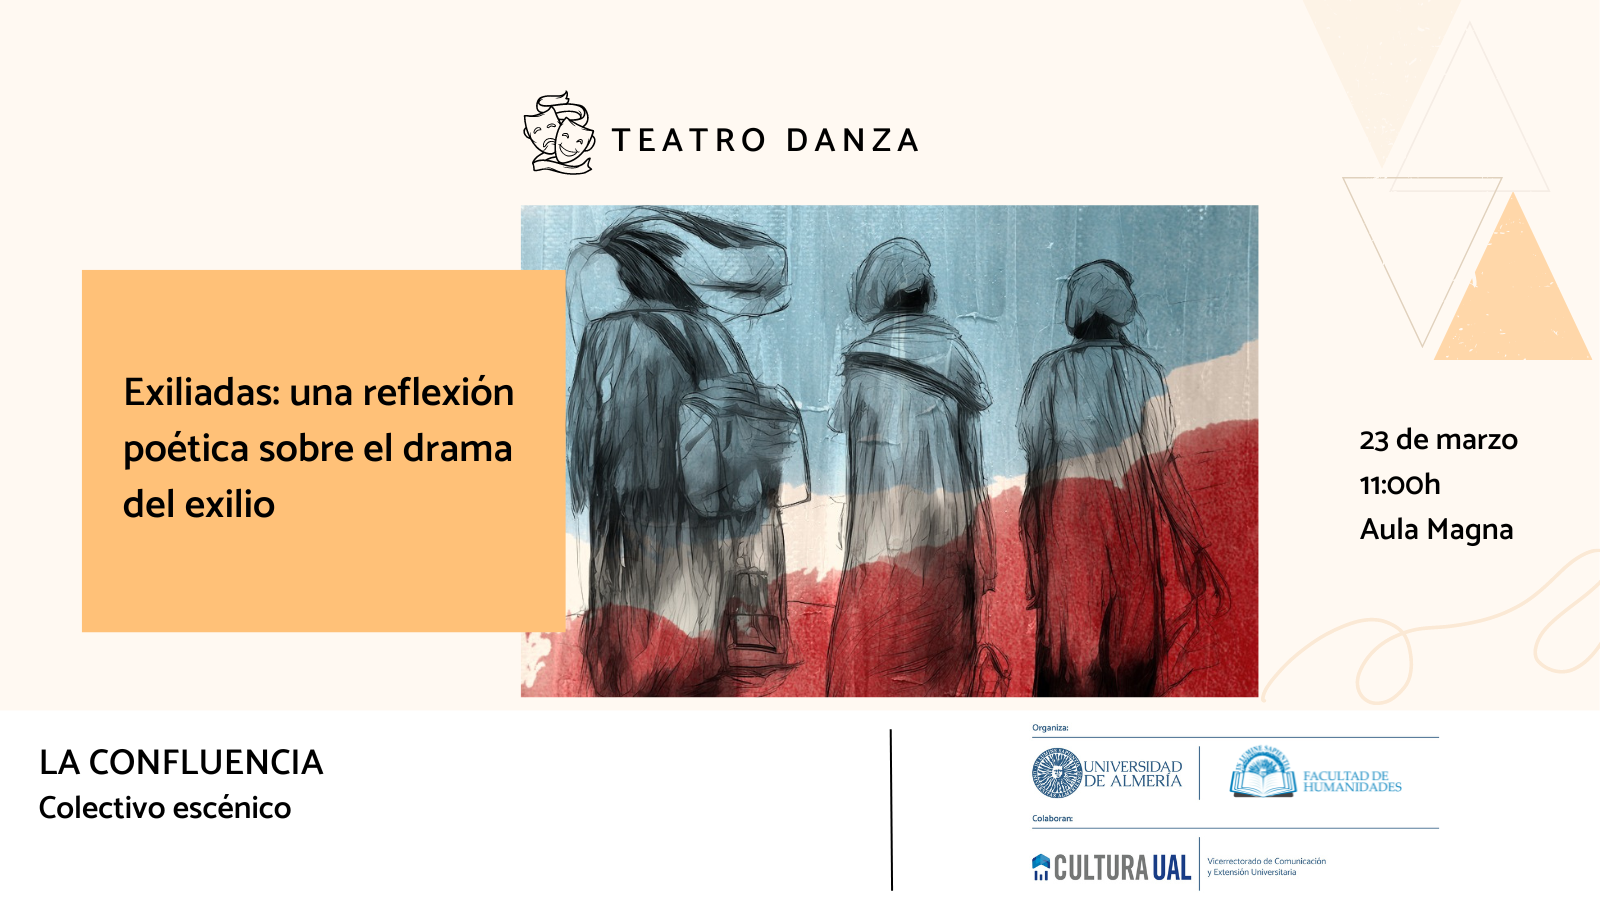 La Facultad de Humanidades, Carmen Hernández Porcel y Josefa Martínez Romero organizan el teatro danza ‘Exiliadas: una reflexión poética sobre el drama del exilio’.